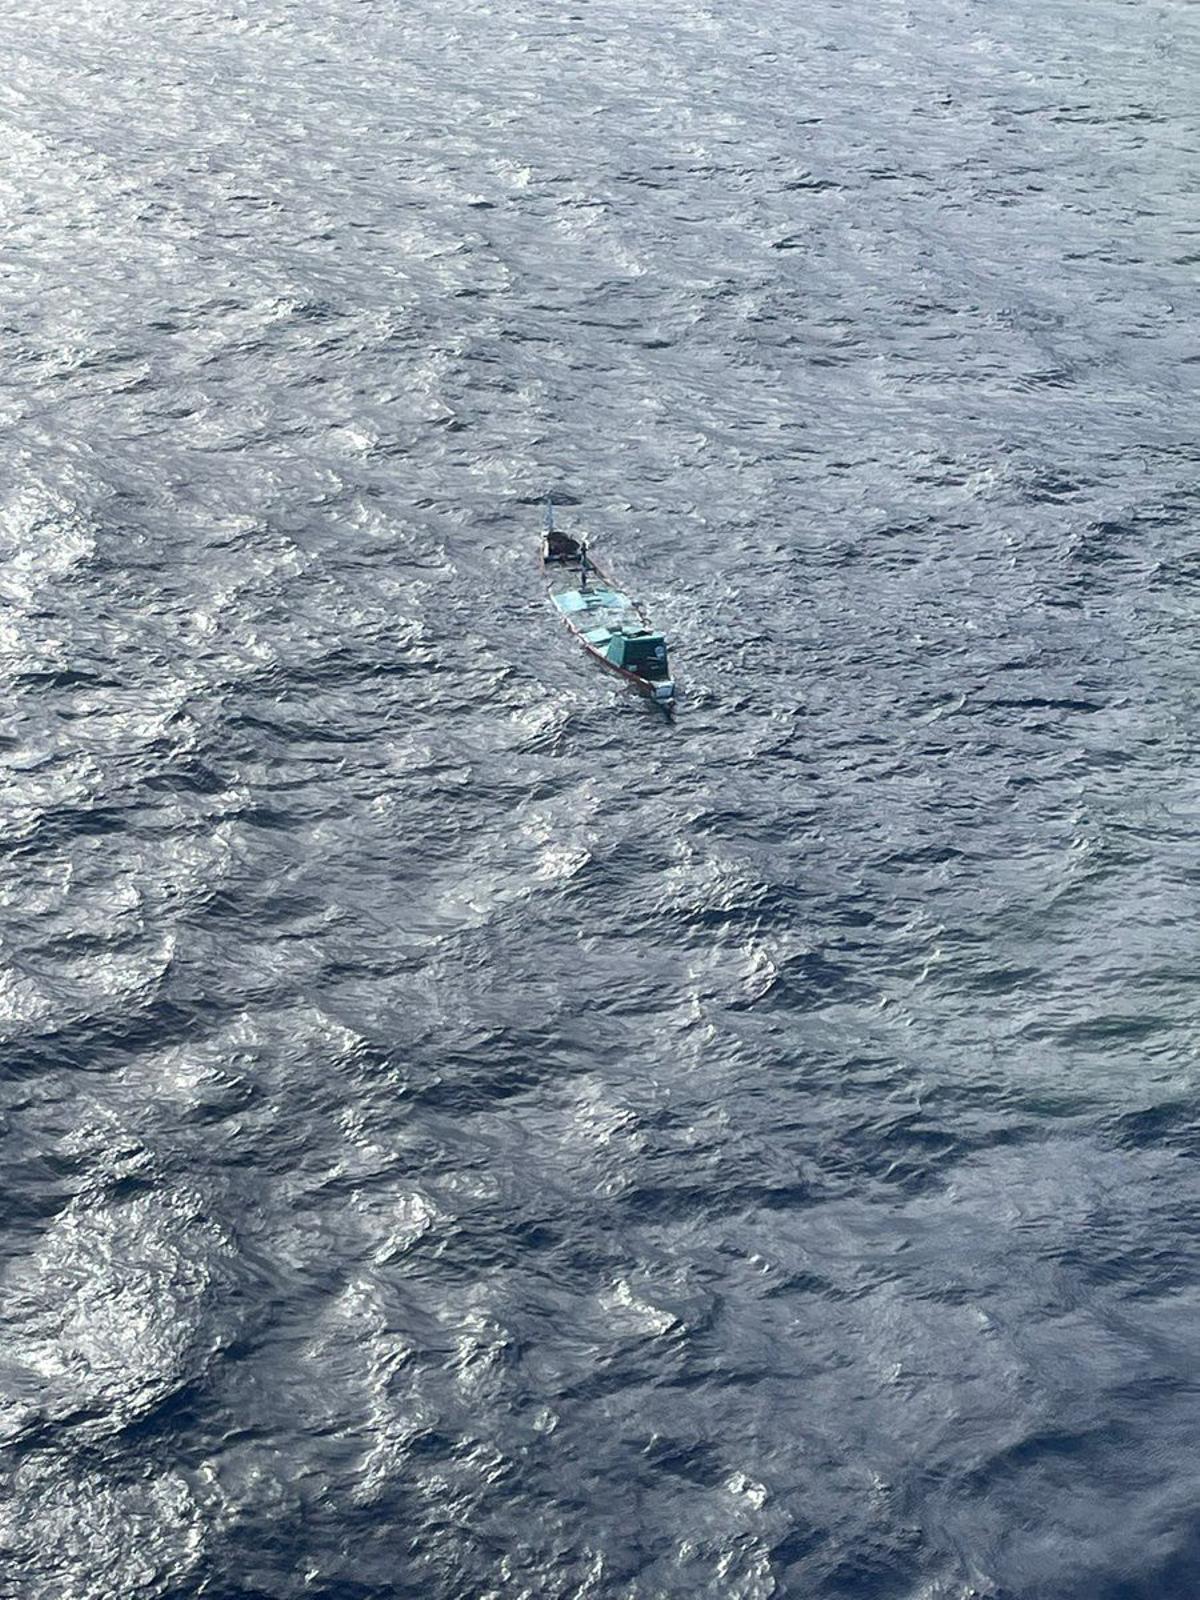 El Helimer 206 de Salvamento Marítimo rescata a los nueve ocupantes de un cayuco que se estaba hundiendo a 60 millas al sur de la isla de El Hierro